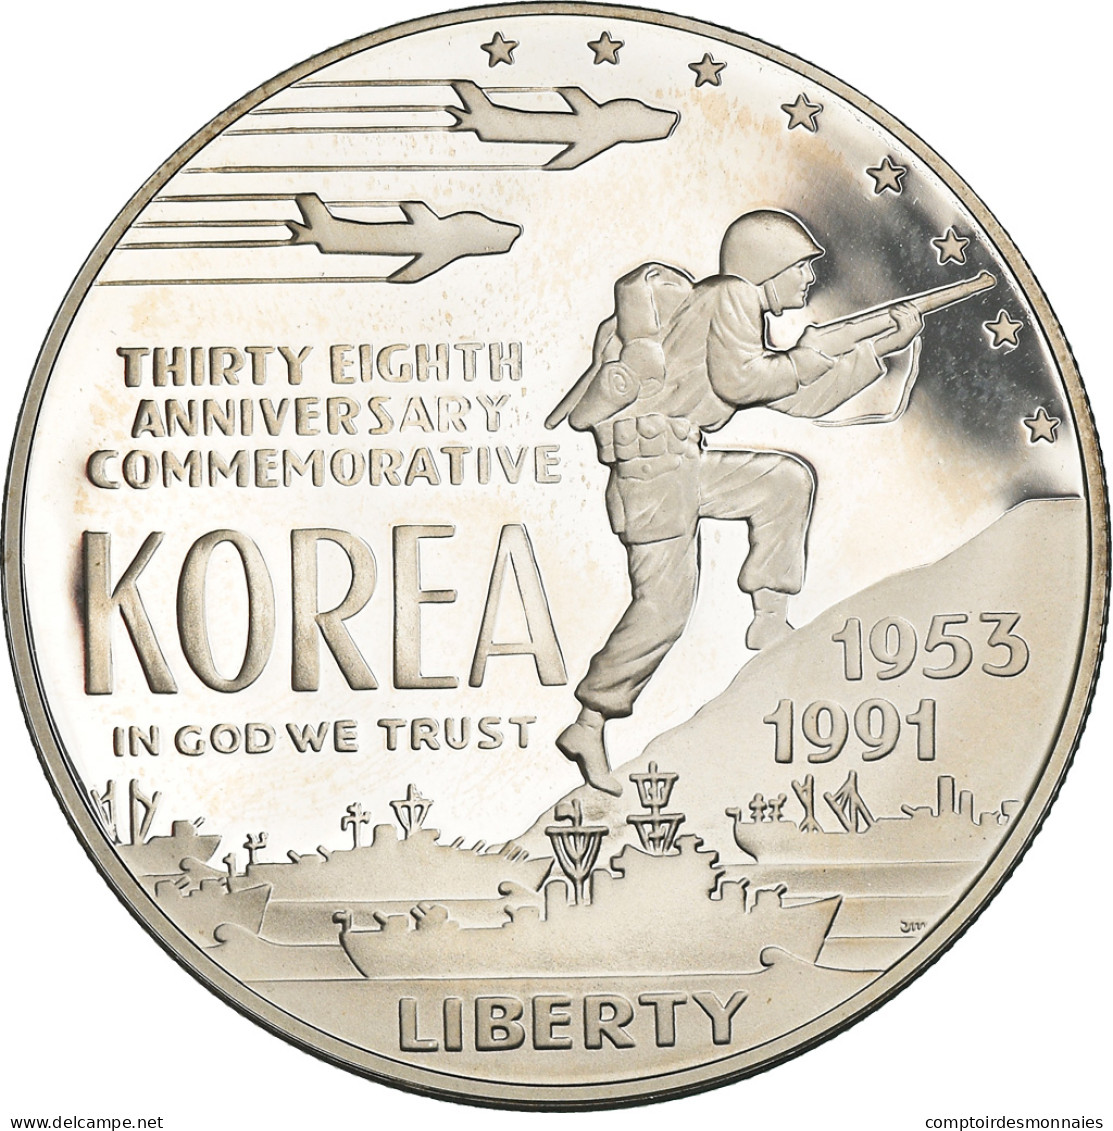 Monnaie, États-Unis, Guerre De Corée, Dollar, 1991, Philadelphie, FDC, Argent - Commemoratifs